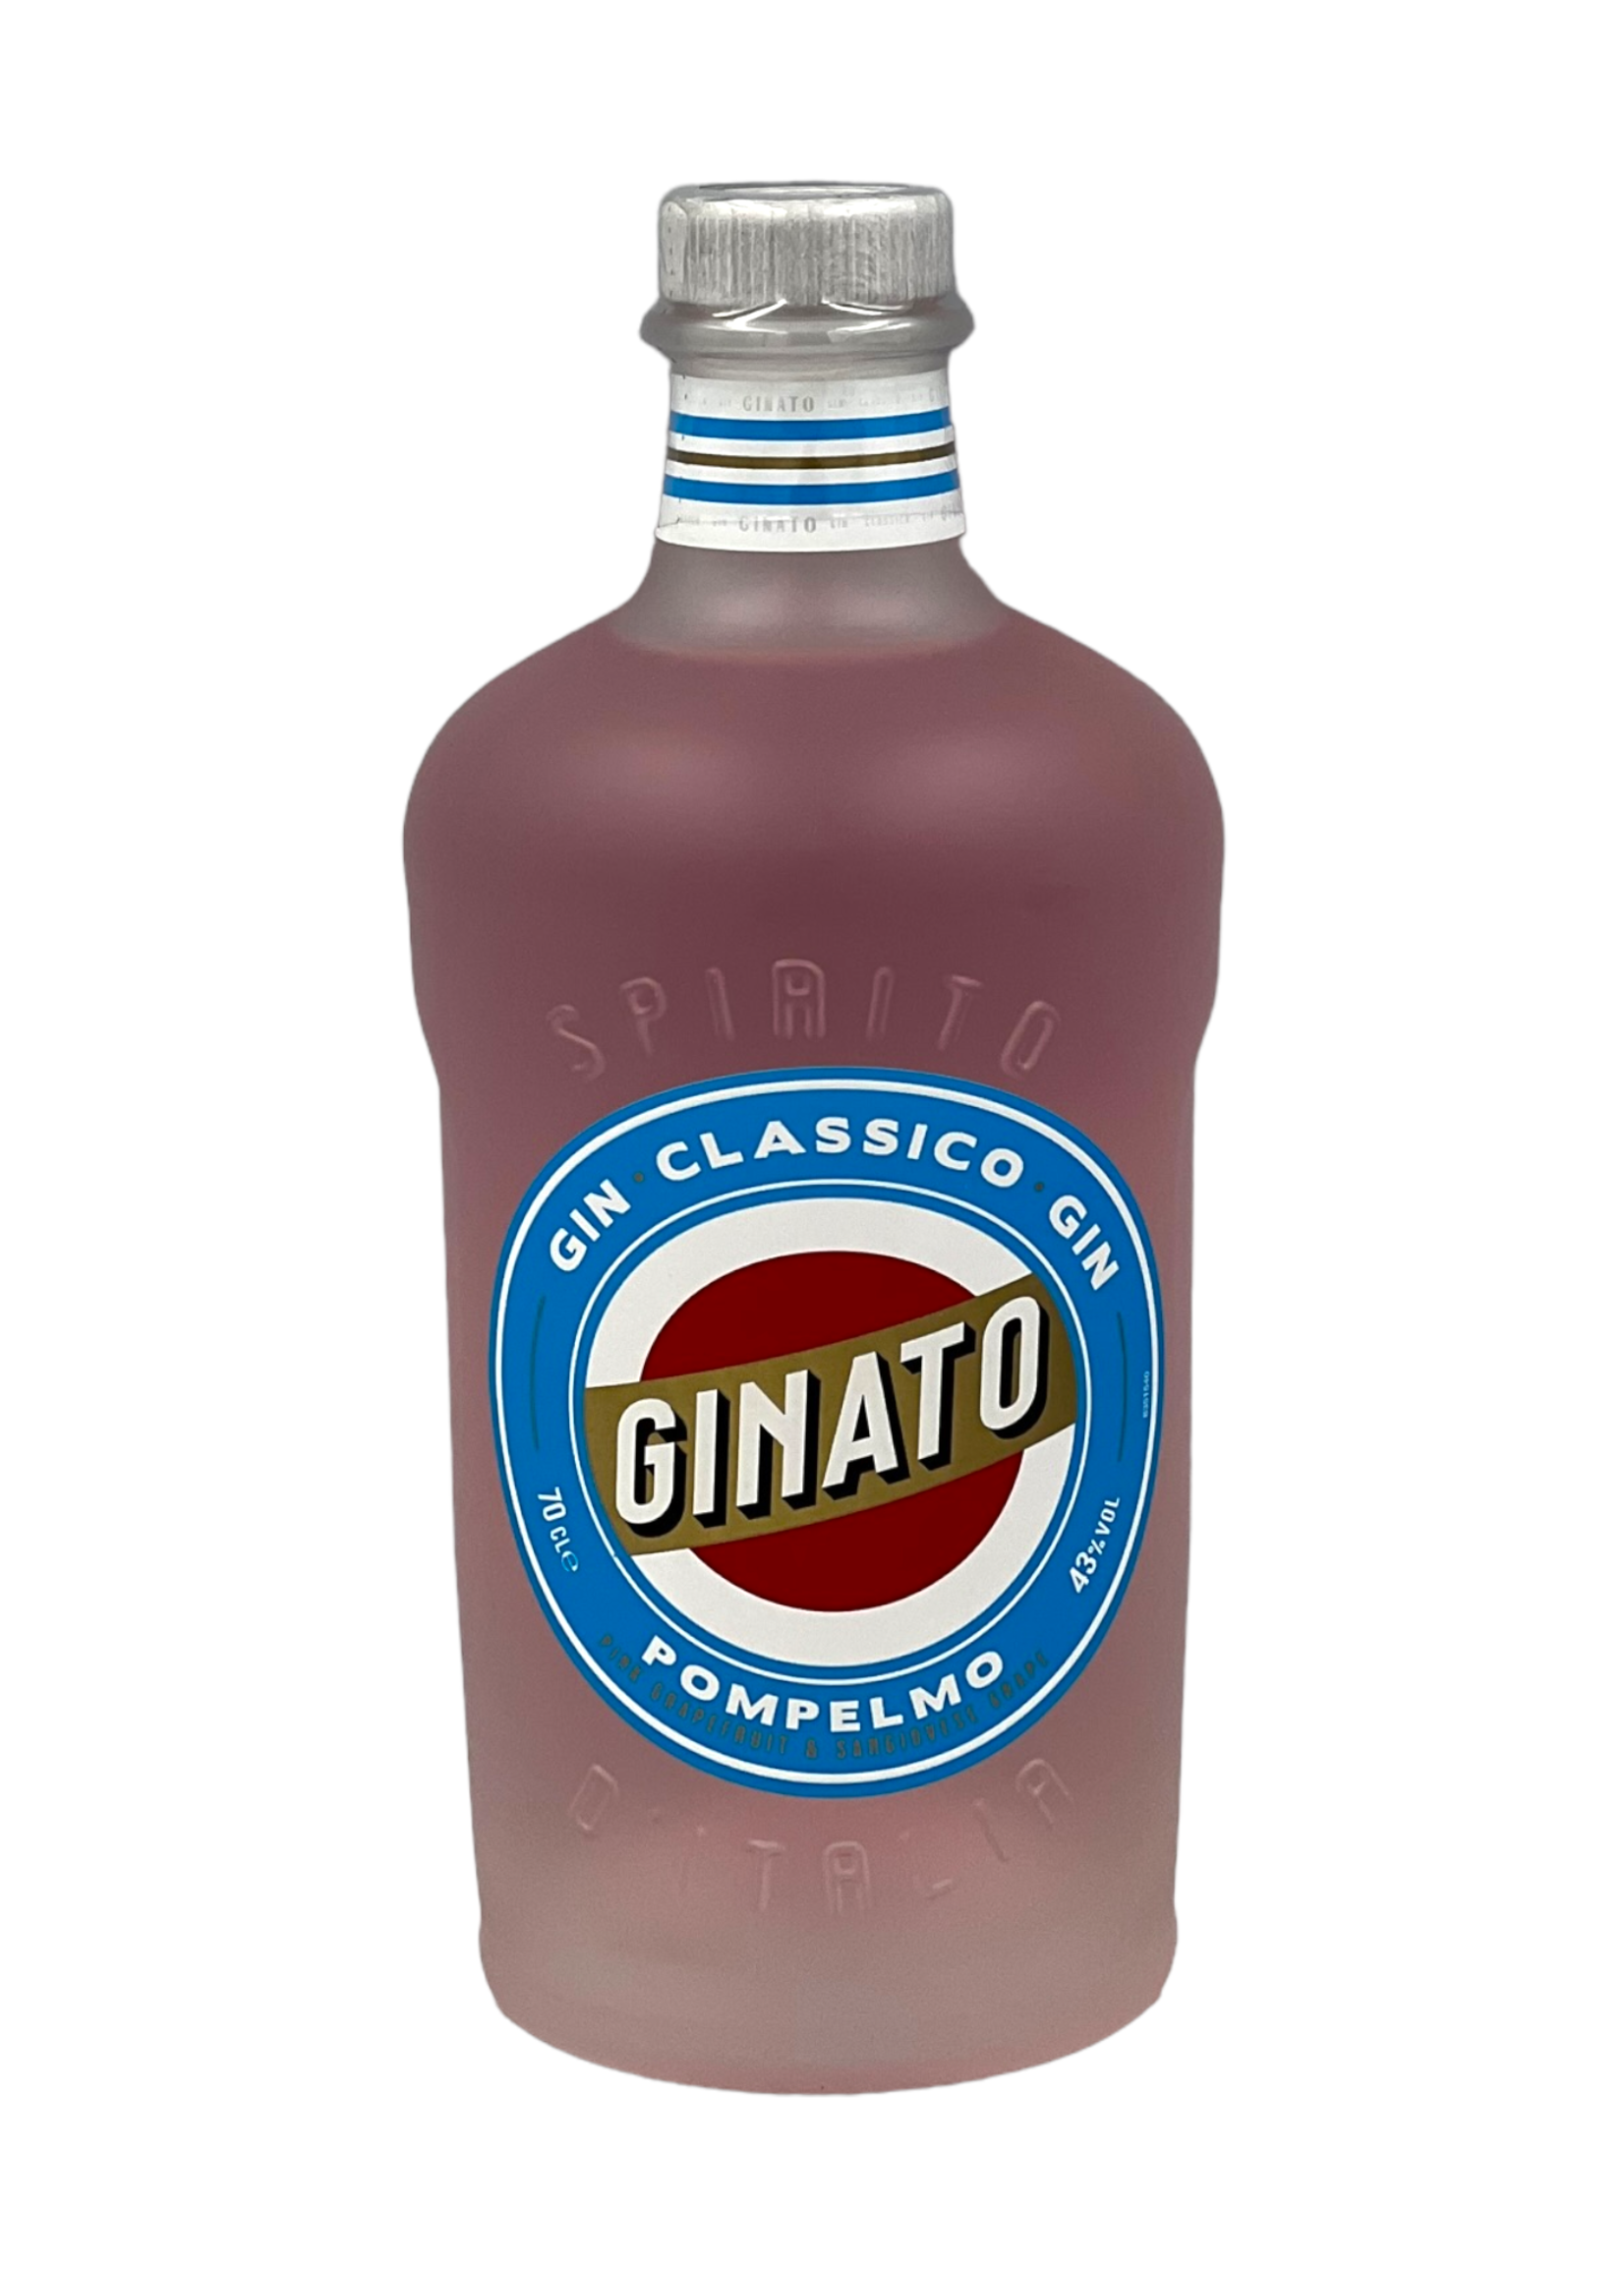 Gin Classico Pompelmo 43% VOL , 70cl - GINATO